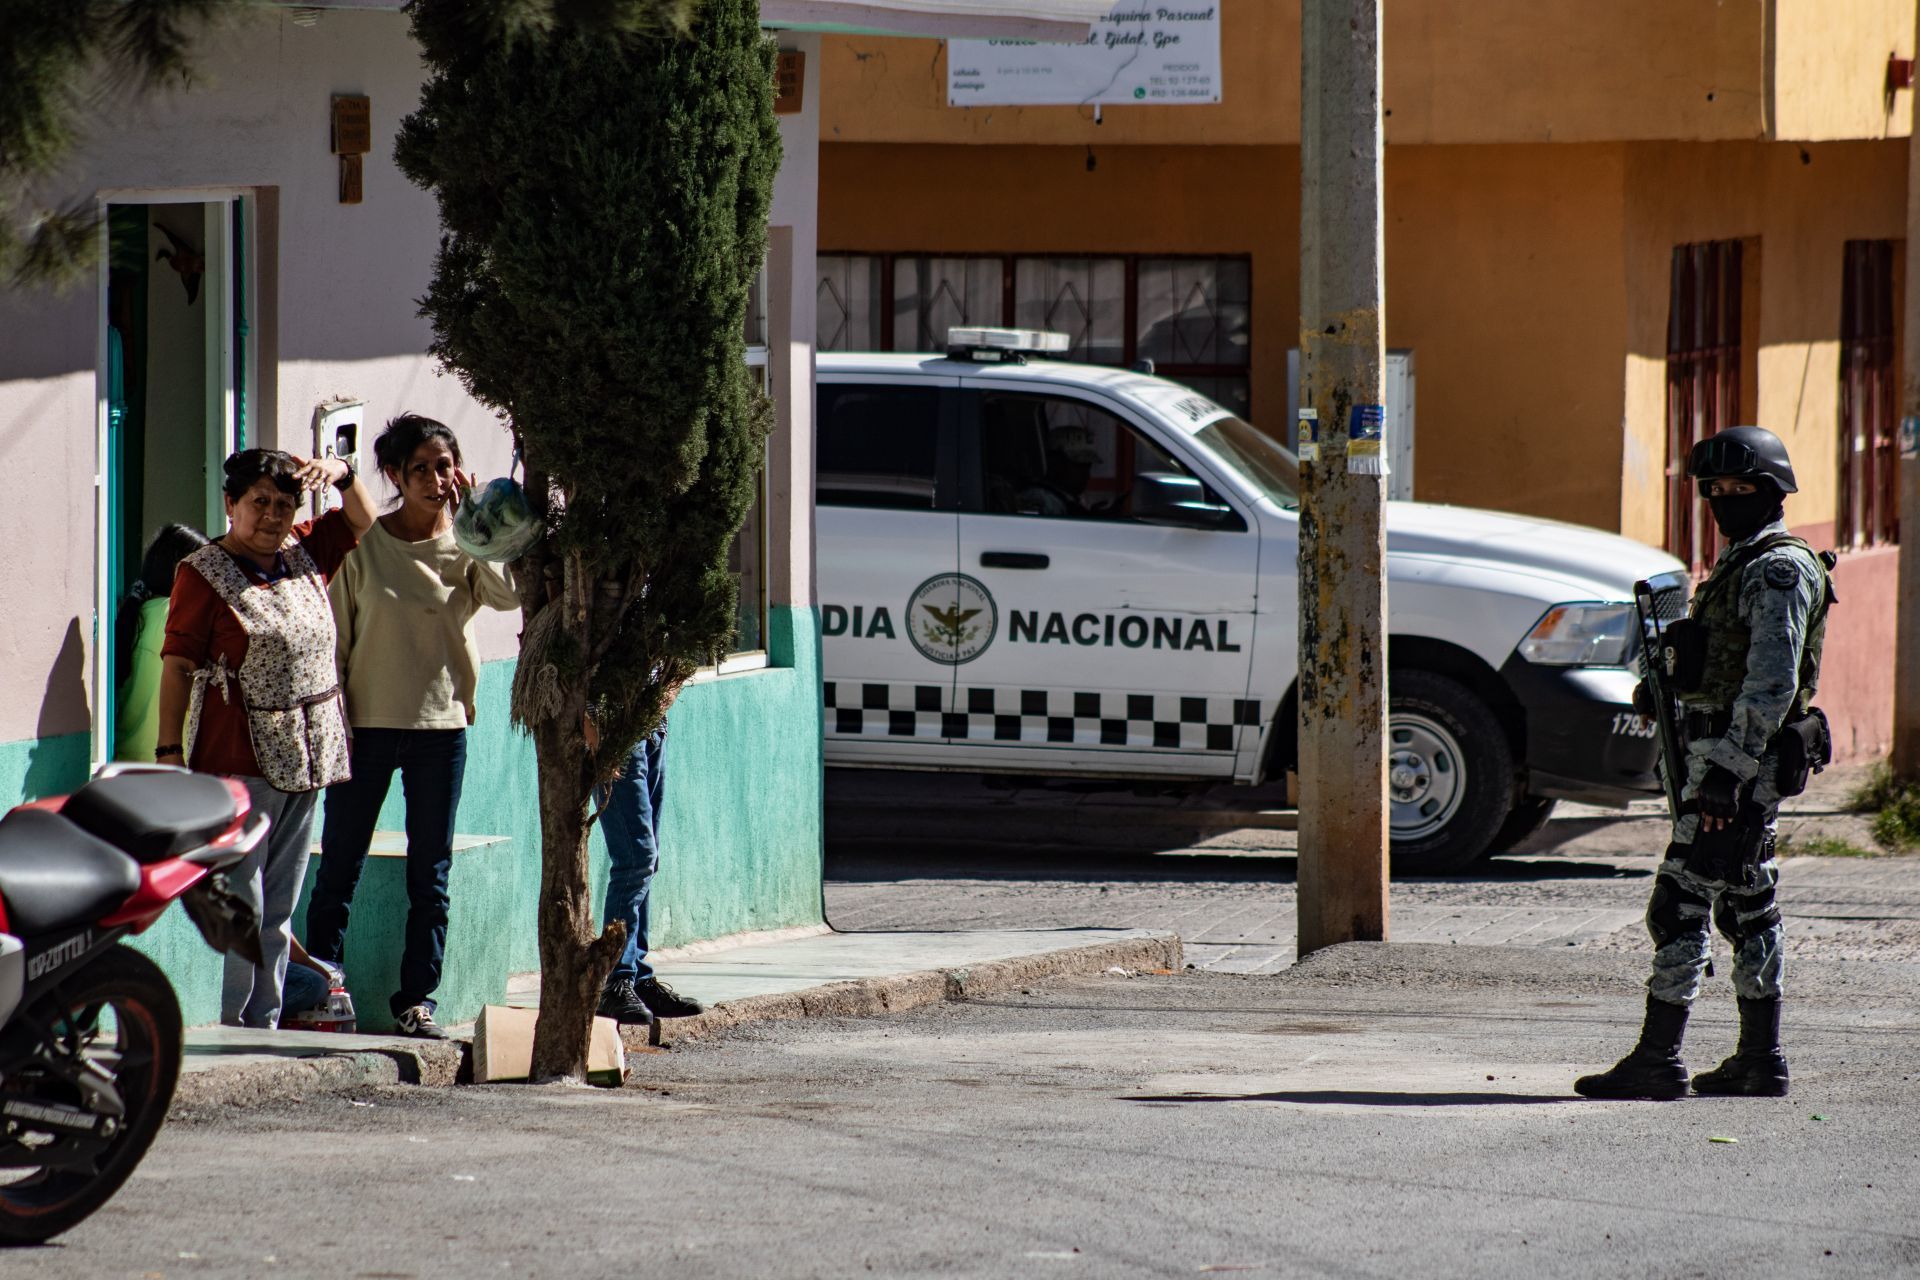 Zetas - Balacera de 3 días entre Zetas y CG, deja 46 muertos en Zacatecas. - Página 2 MZPZU7W7FZFIRHW5GPKCSETNPY